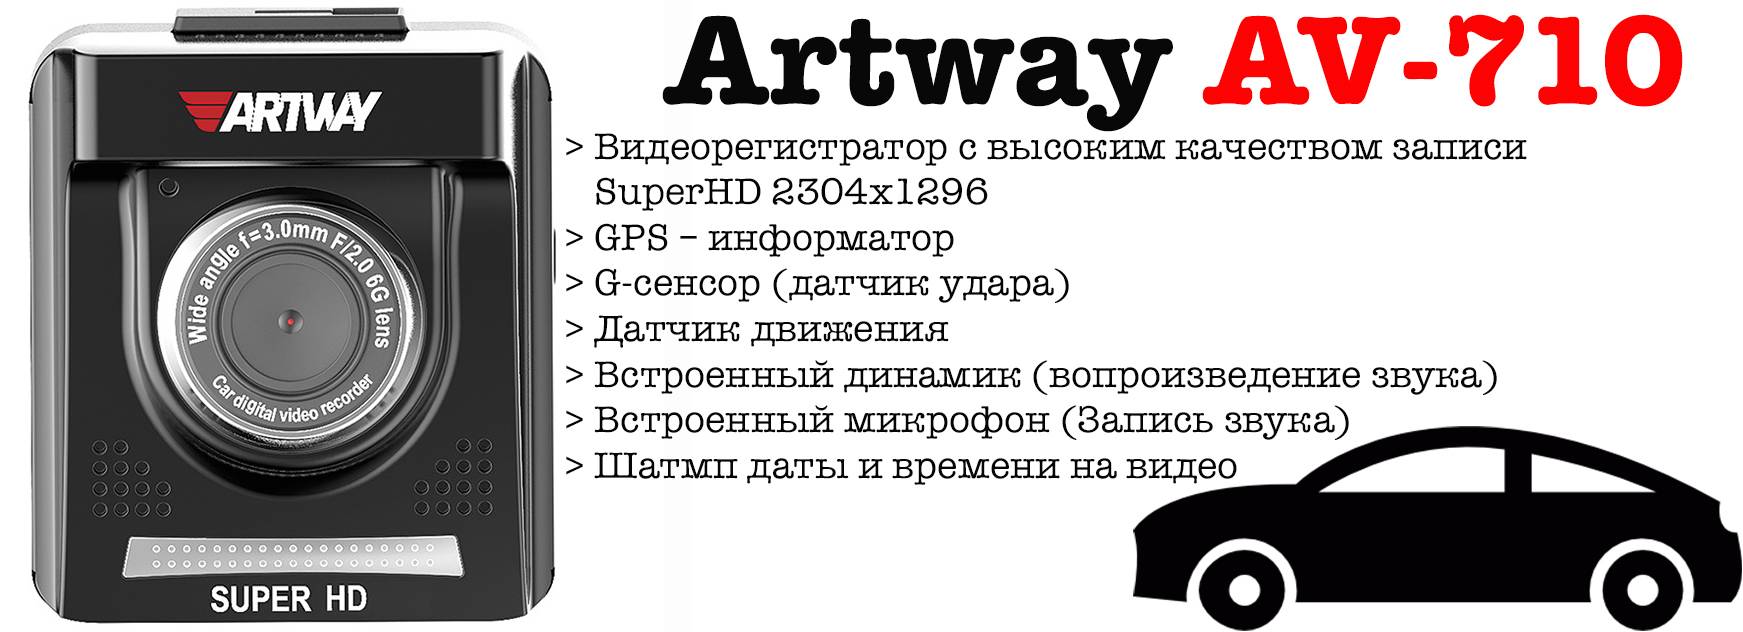 Artway 390 инструкция на русском